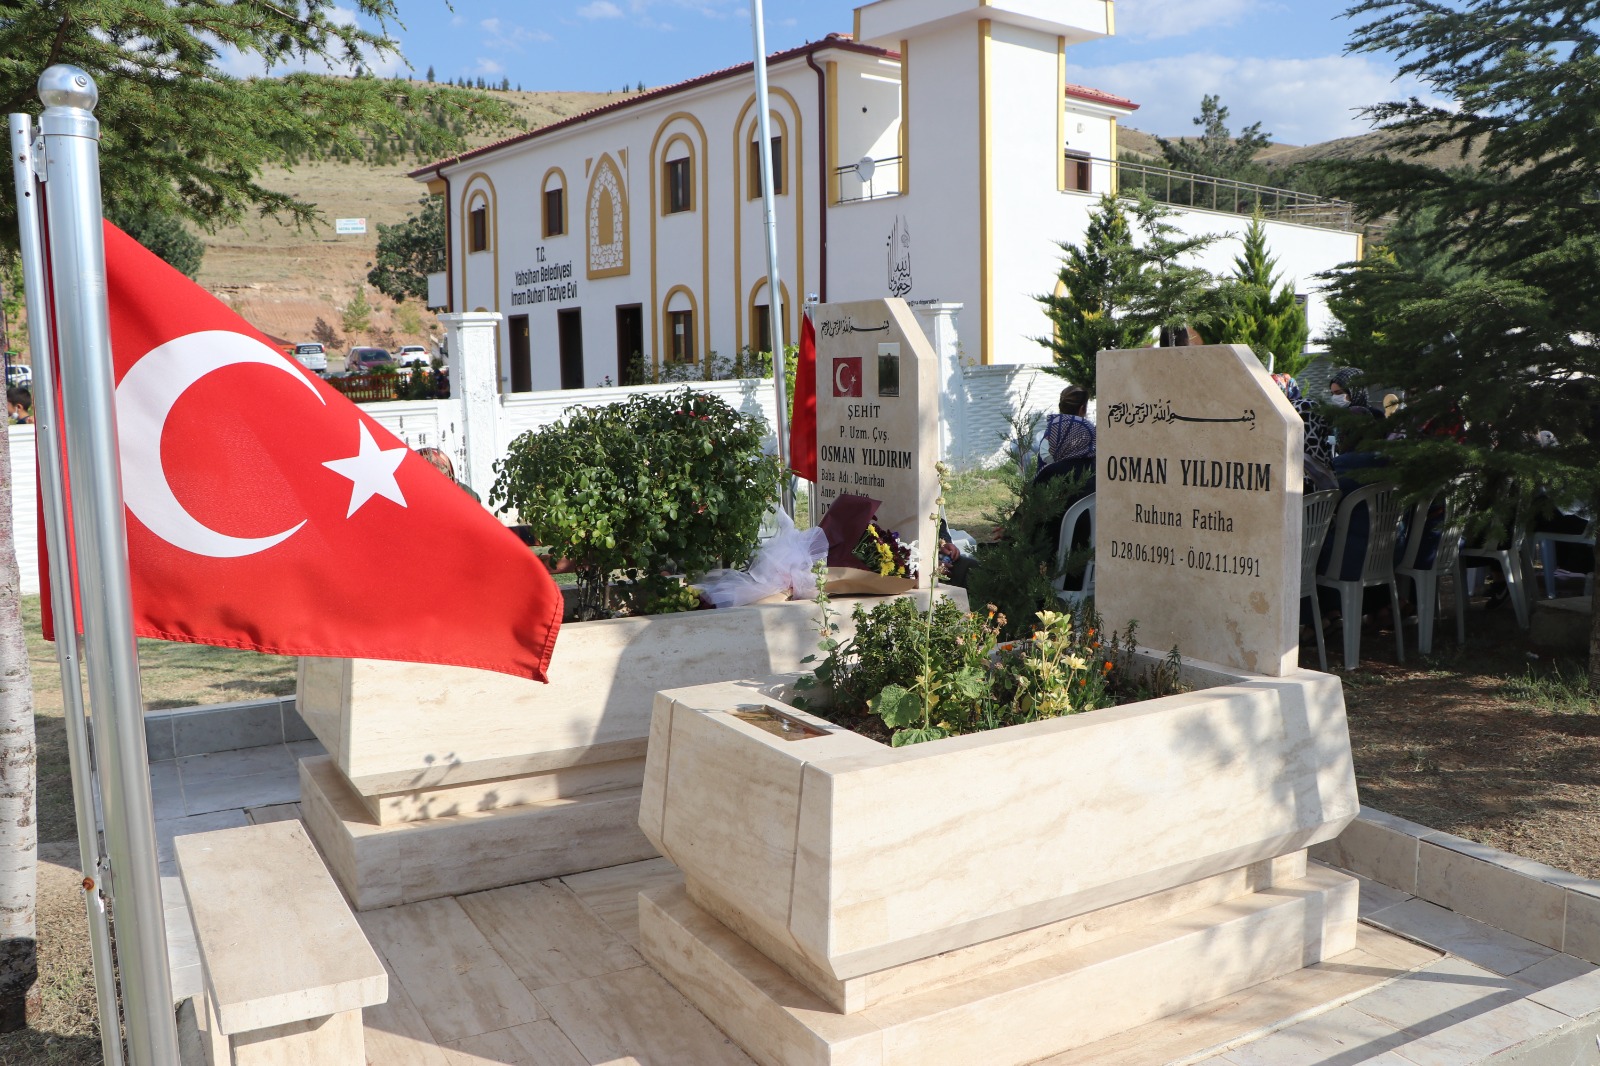  Vefatının 5. Yılında Şehit Osman Yıldırım Yahşihan’daki Kabri Başında Anıldı